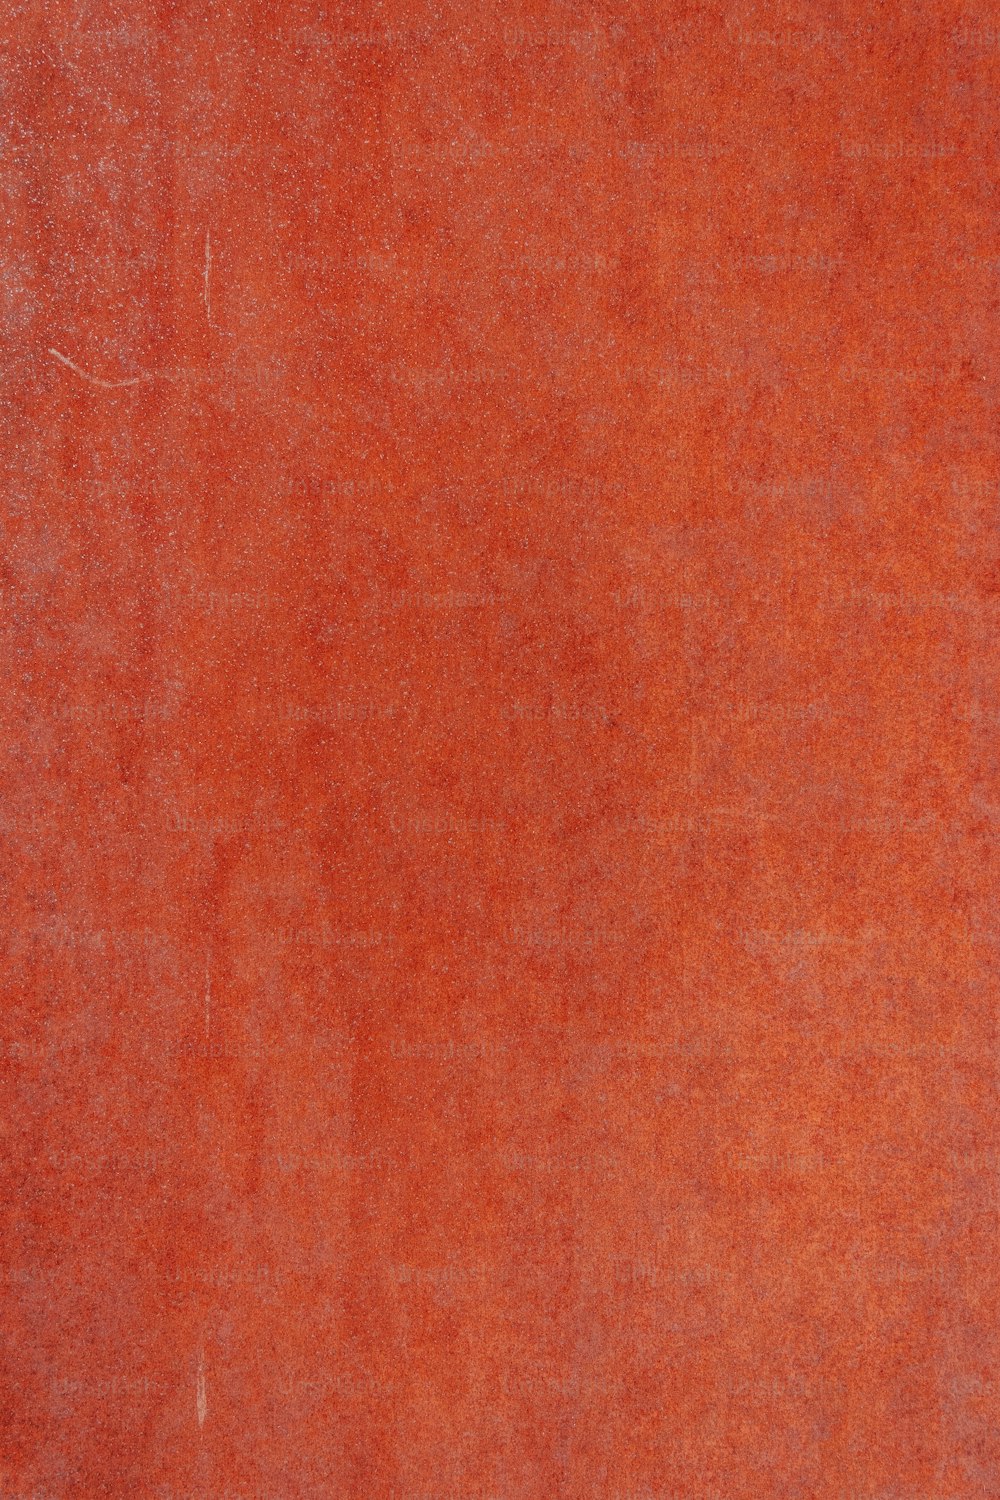 Una vista de cerca de una superficie roja